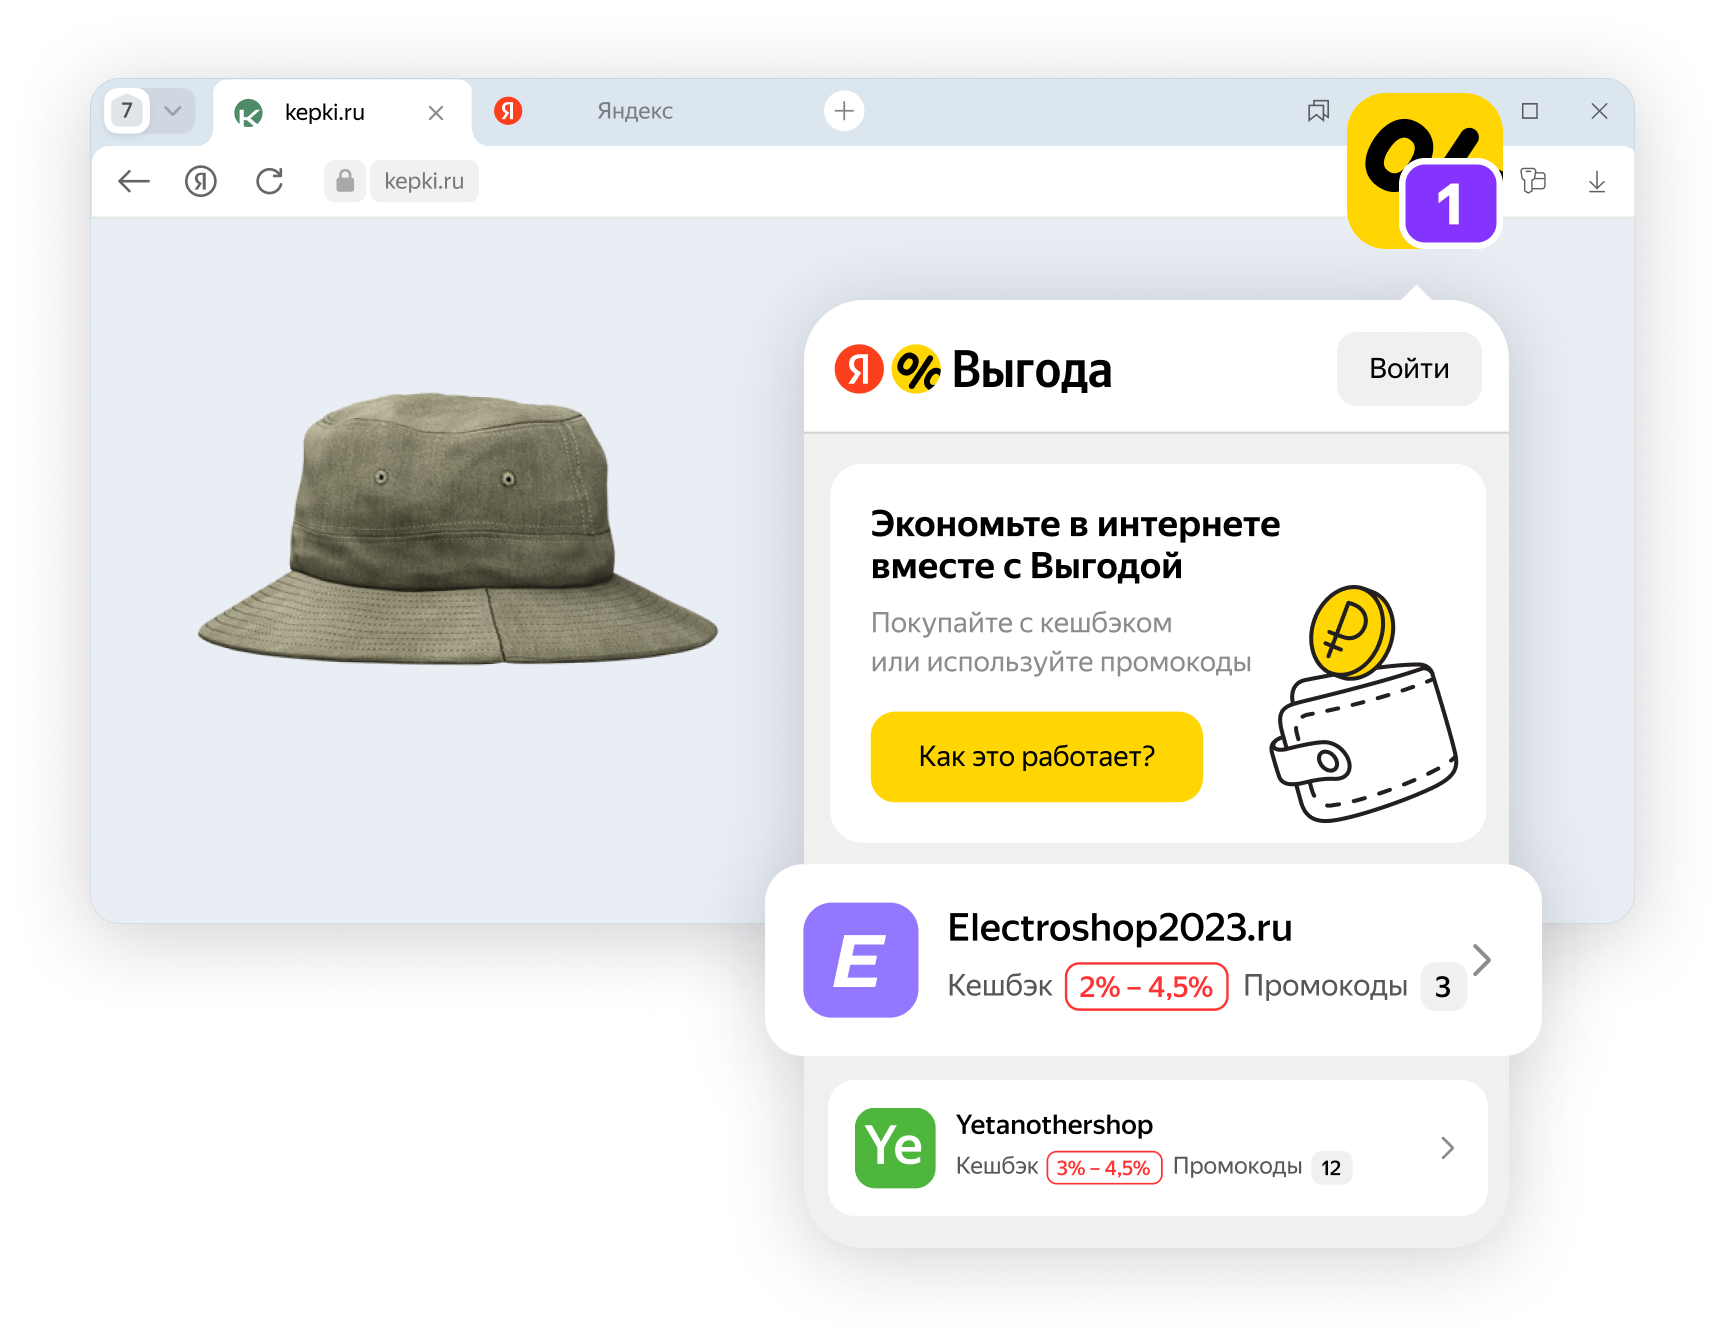 Яндекс представил расширение для браузера со скидками и кешбэком Яндекс Выгода